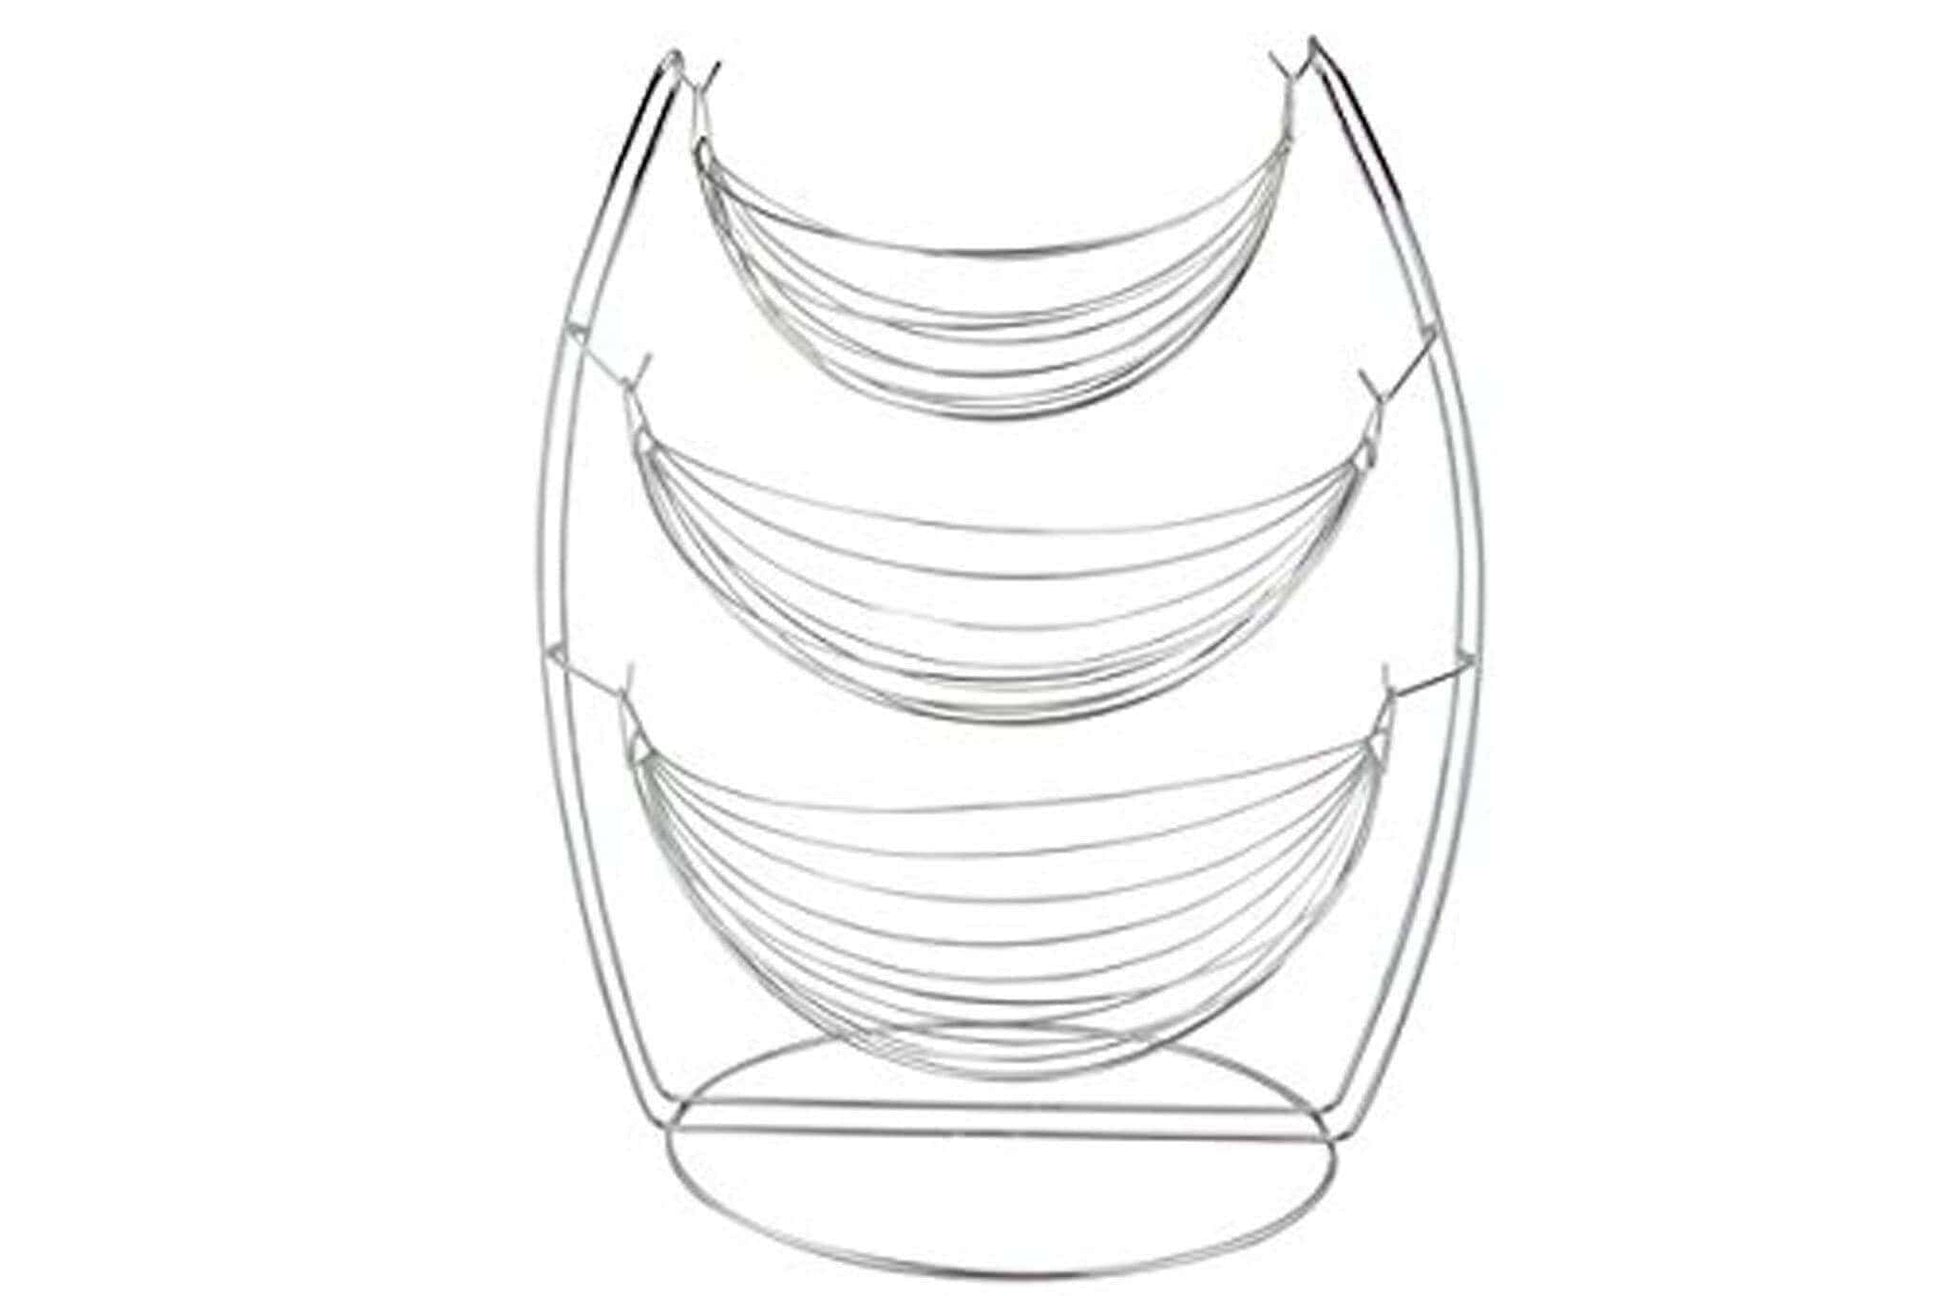 Kitchenware  -  Apollo Chrome Swing Fruit Basket  -  50143335